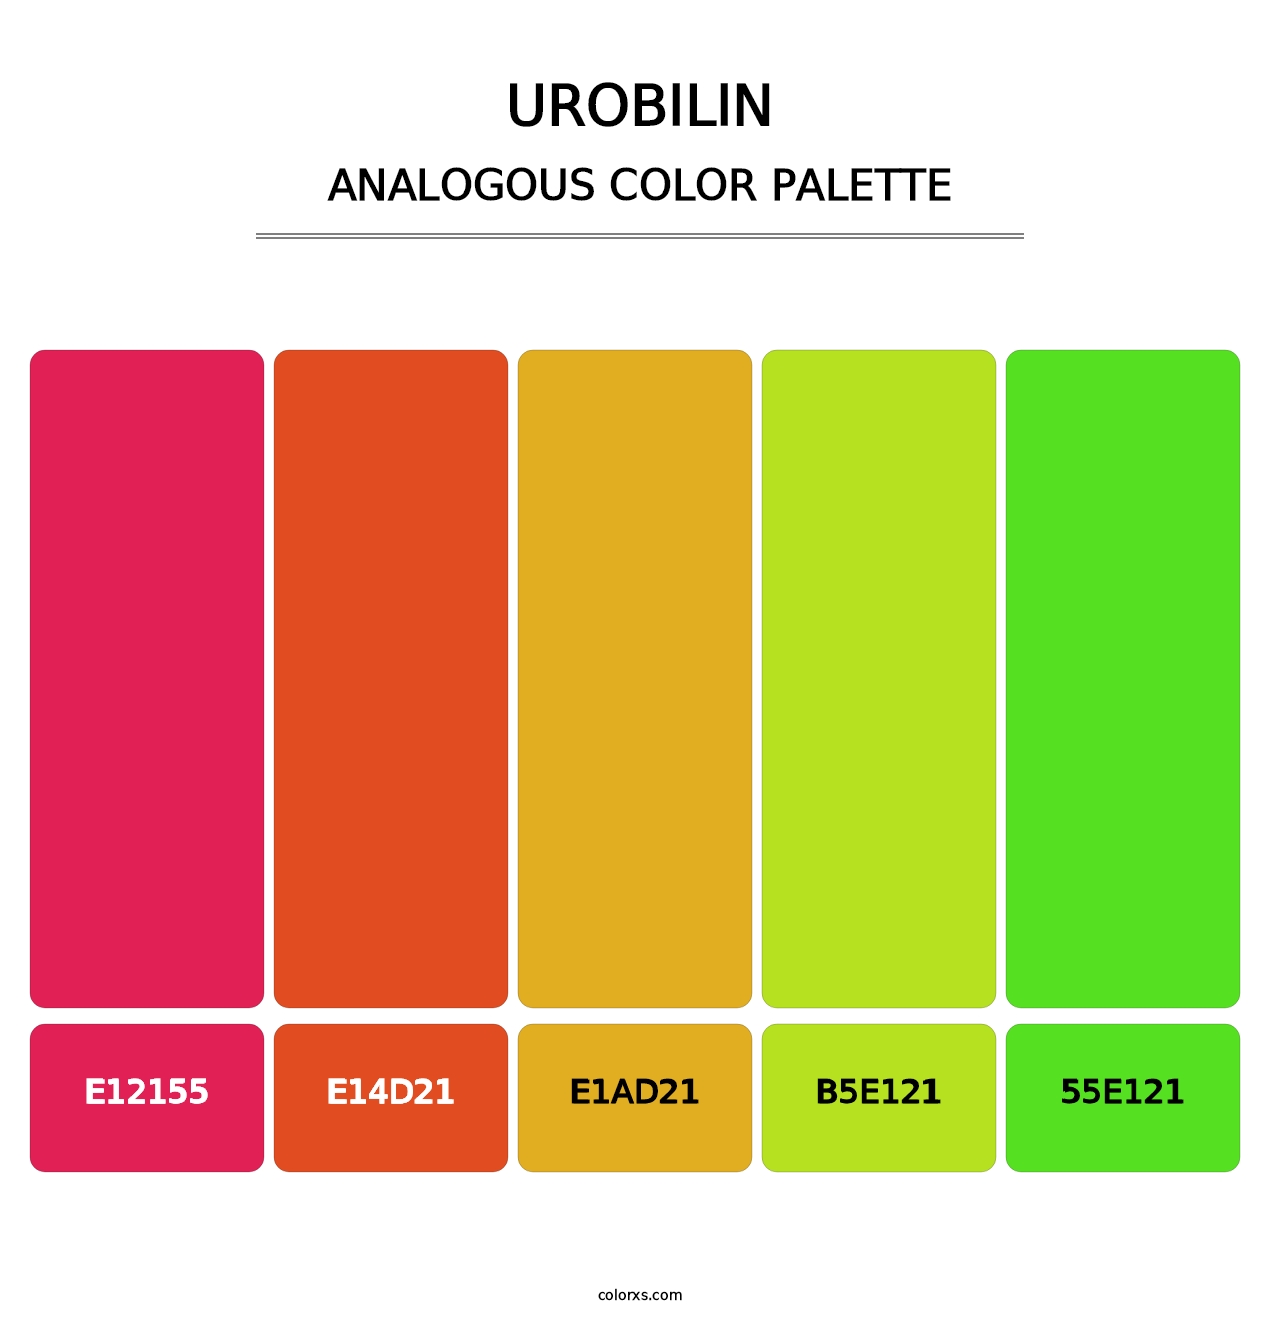 Urobilin - Analogous Color Palette